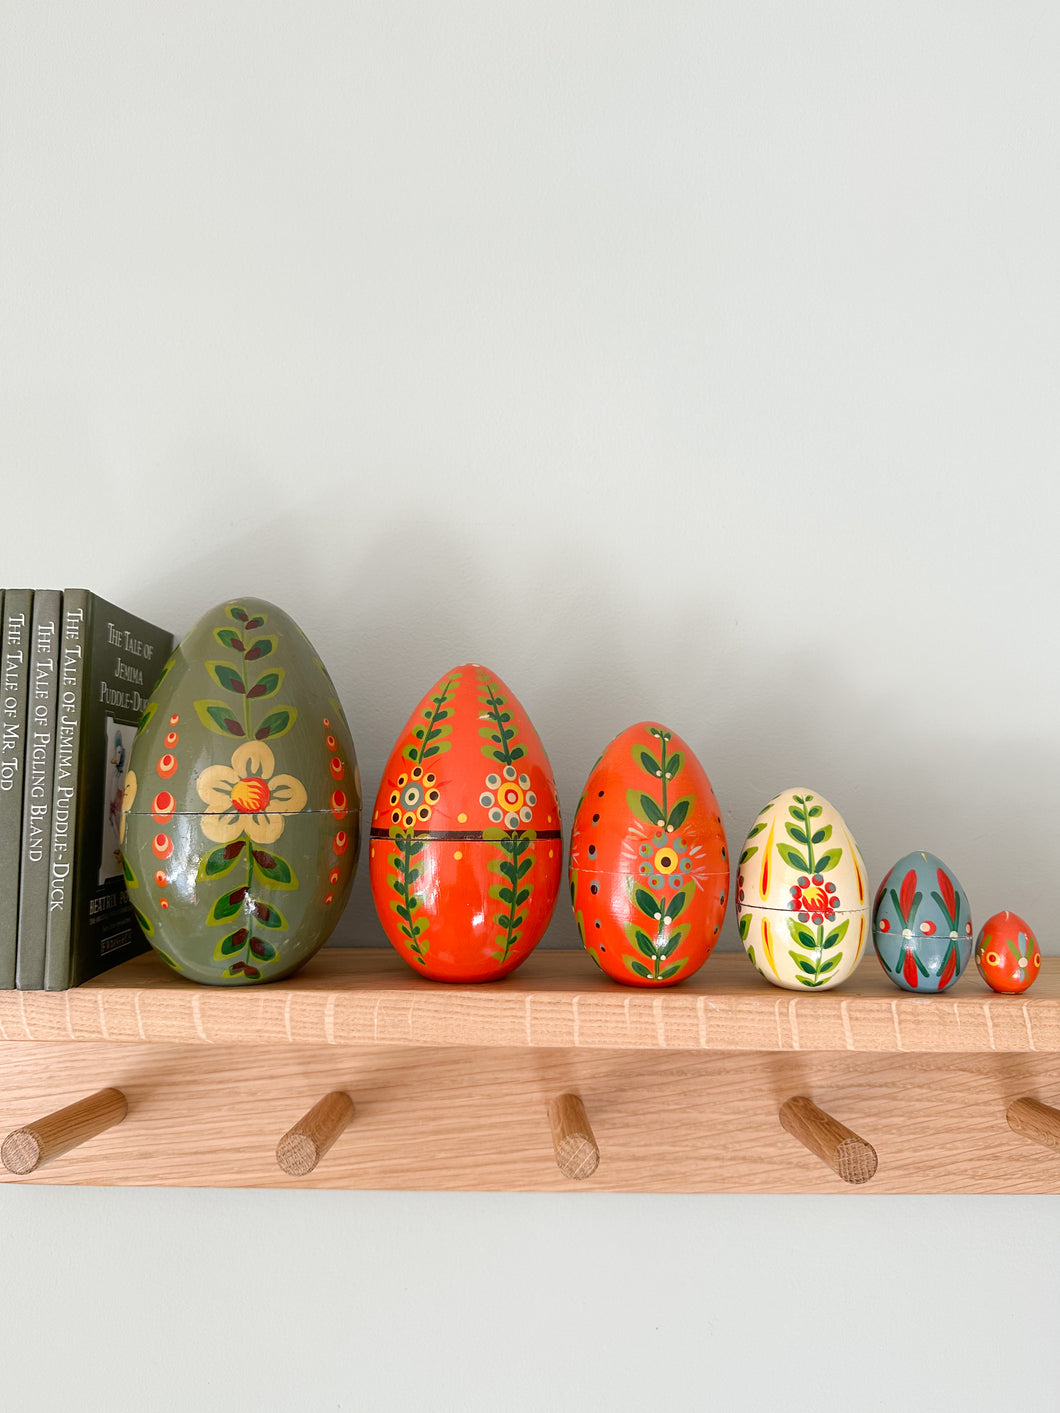 Vintage 1970s wooden nesting Easter eggs - Moppet